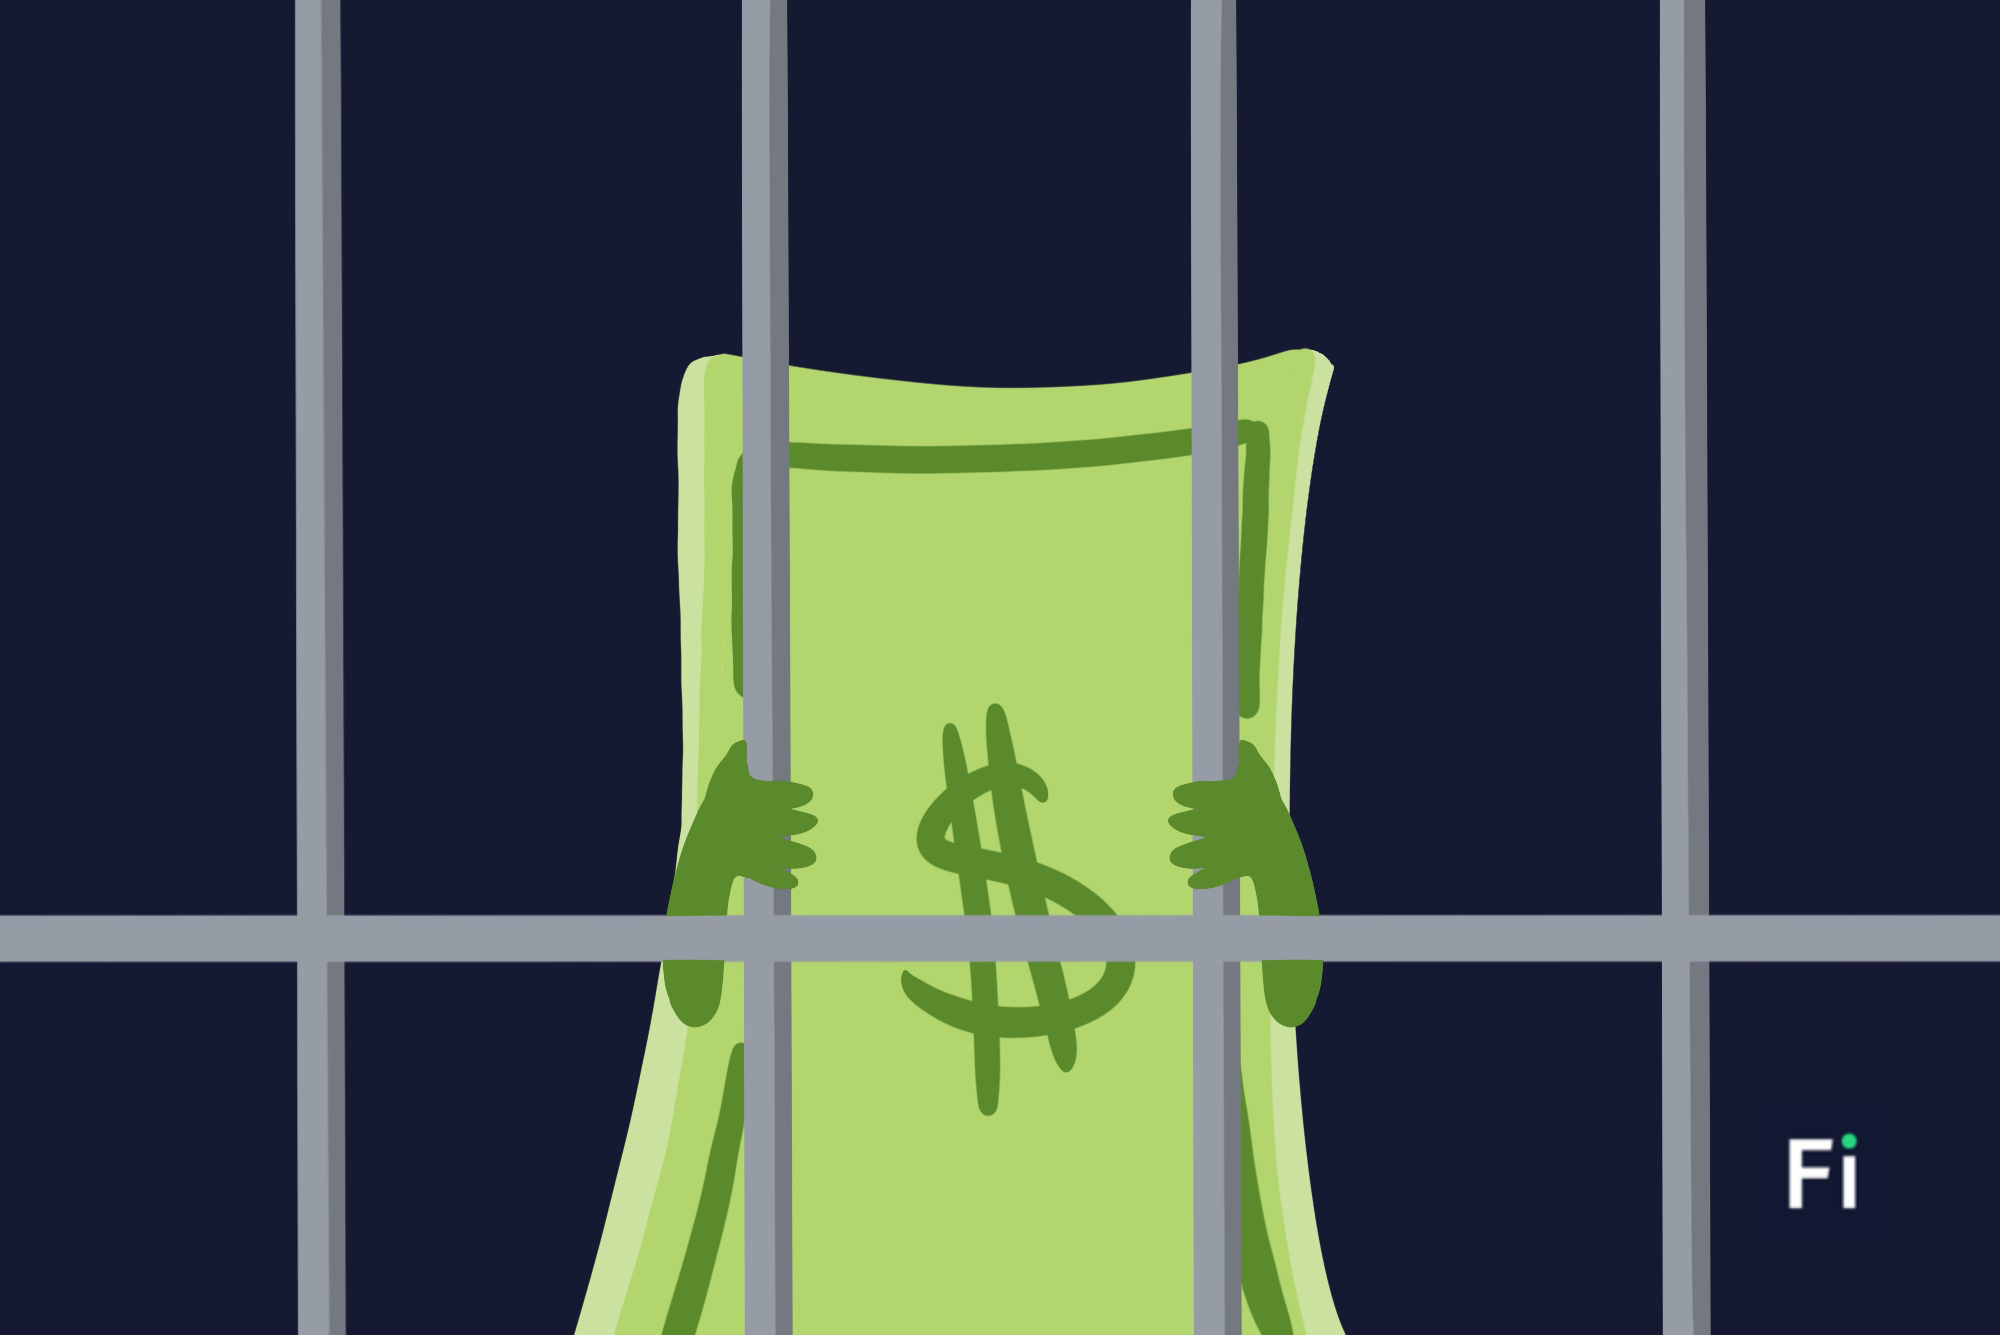 Un billete preso en una cárcel, simulando la esclavitud de salir de deudas